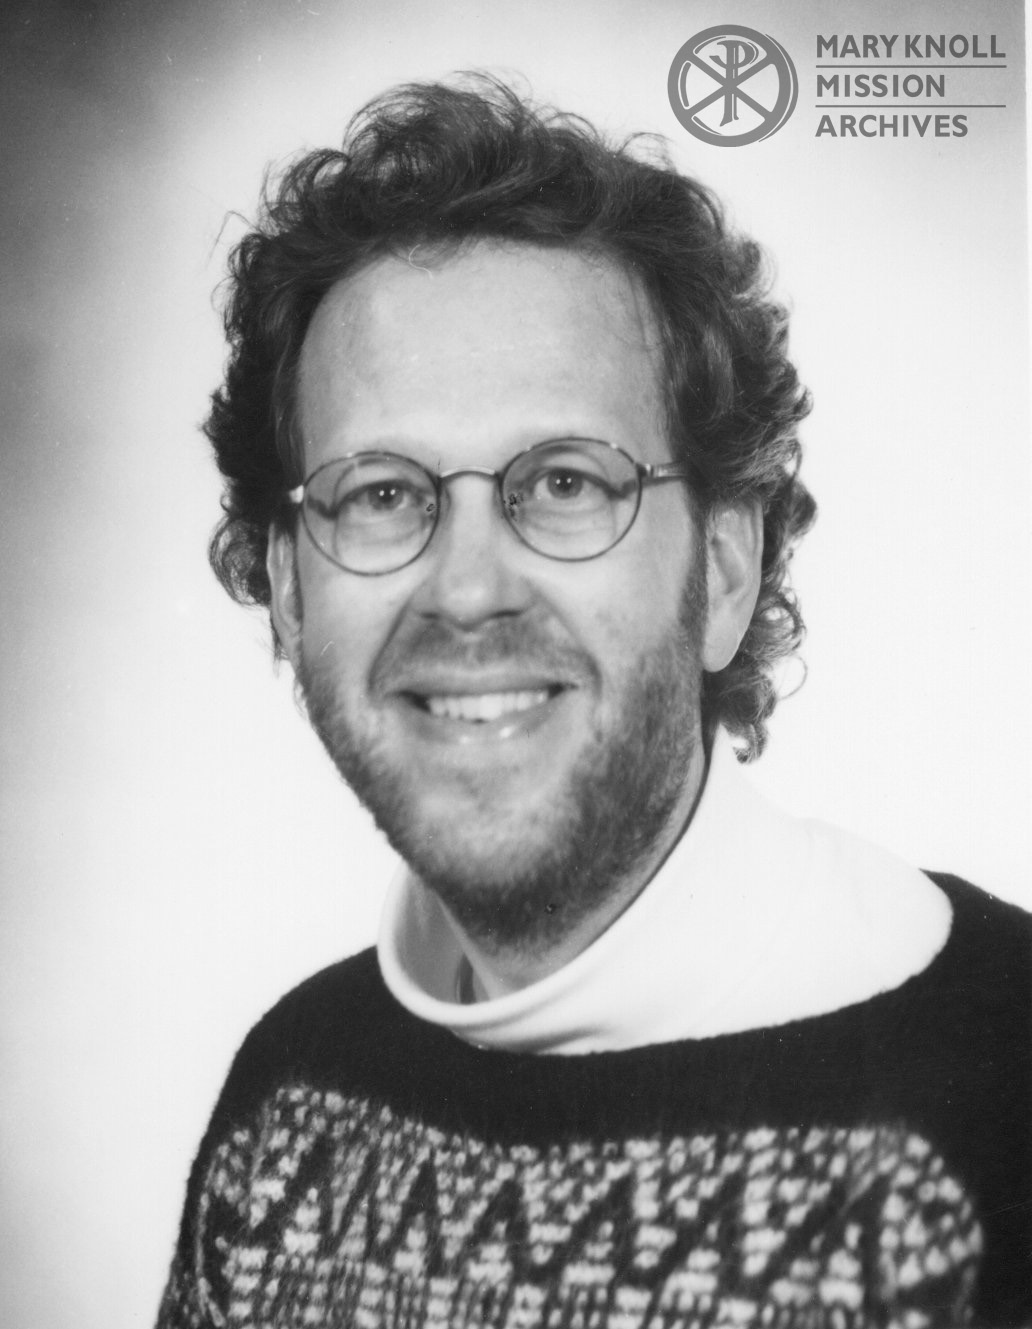 Portrait of Terry Miller, 1996